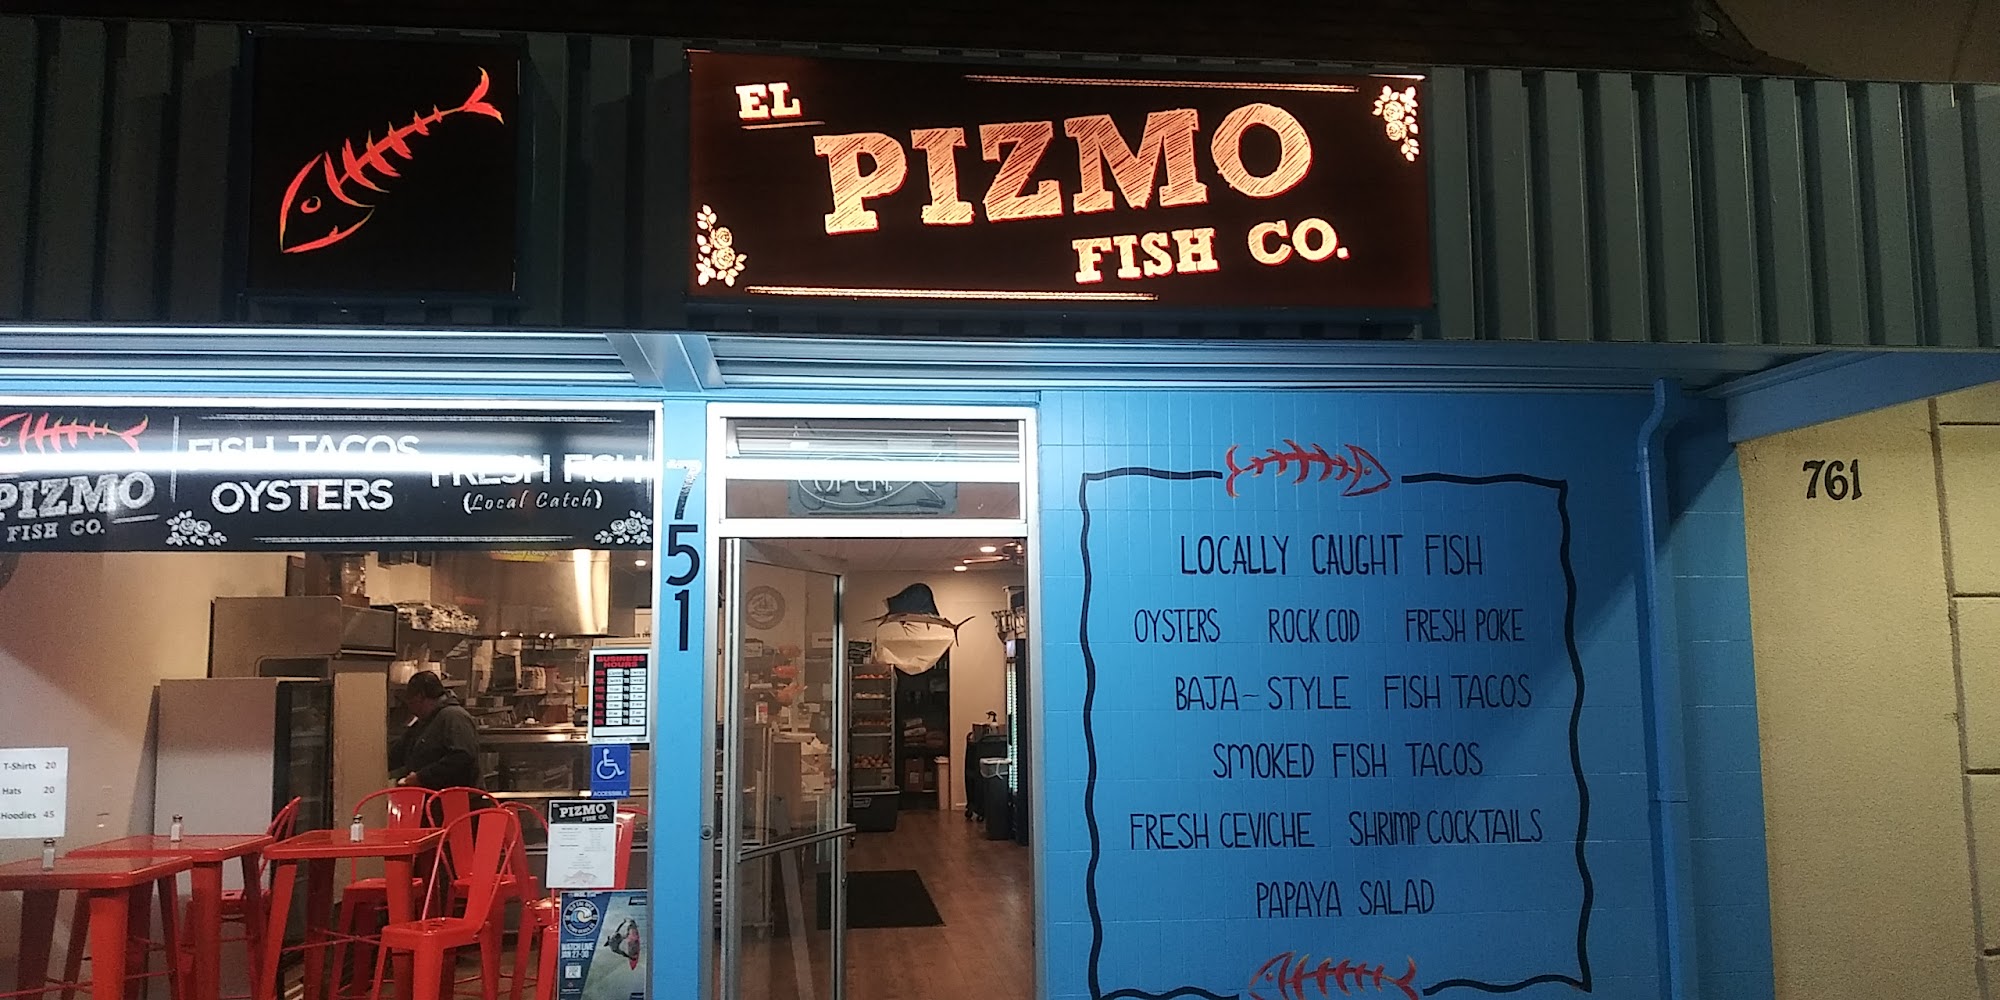 El Pizmo Fish Company